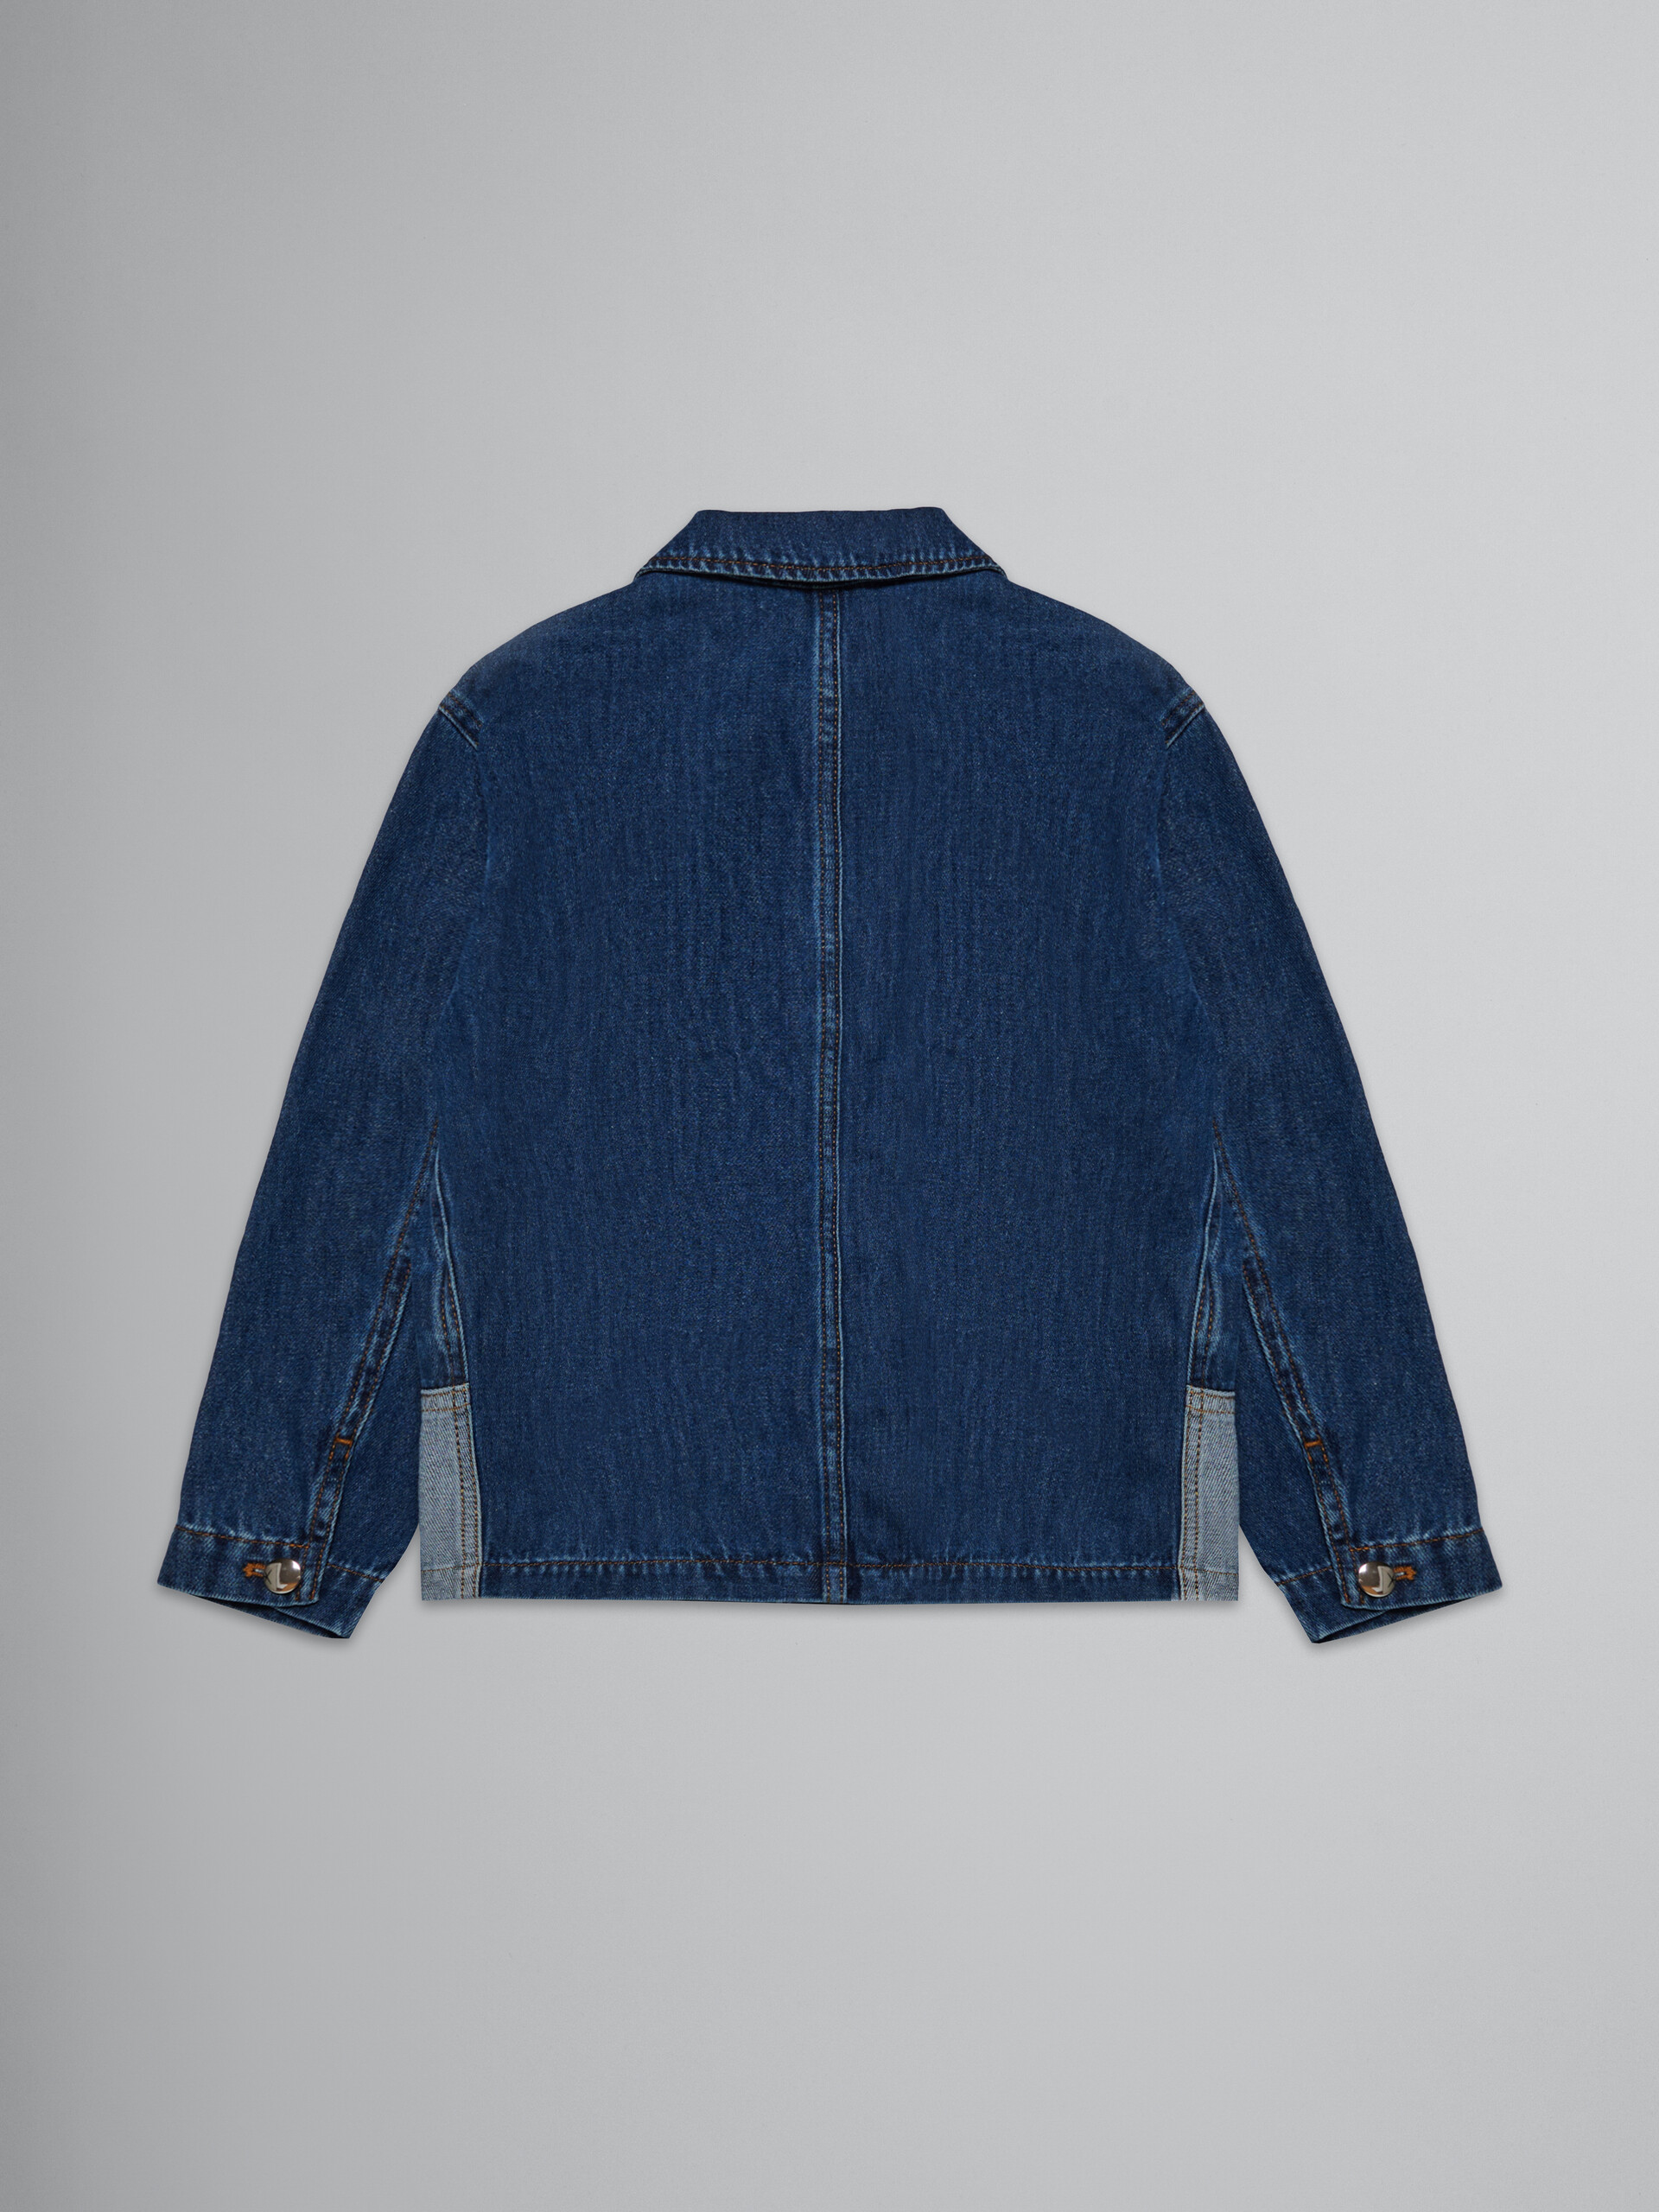 Two-tone denim jacket - Jackets - Image 2